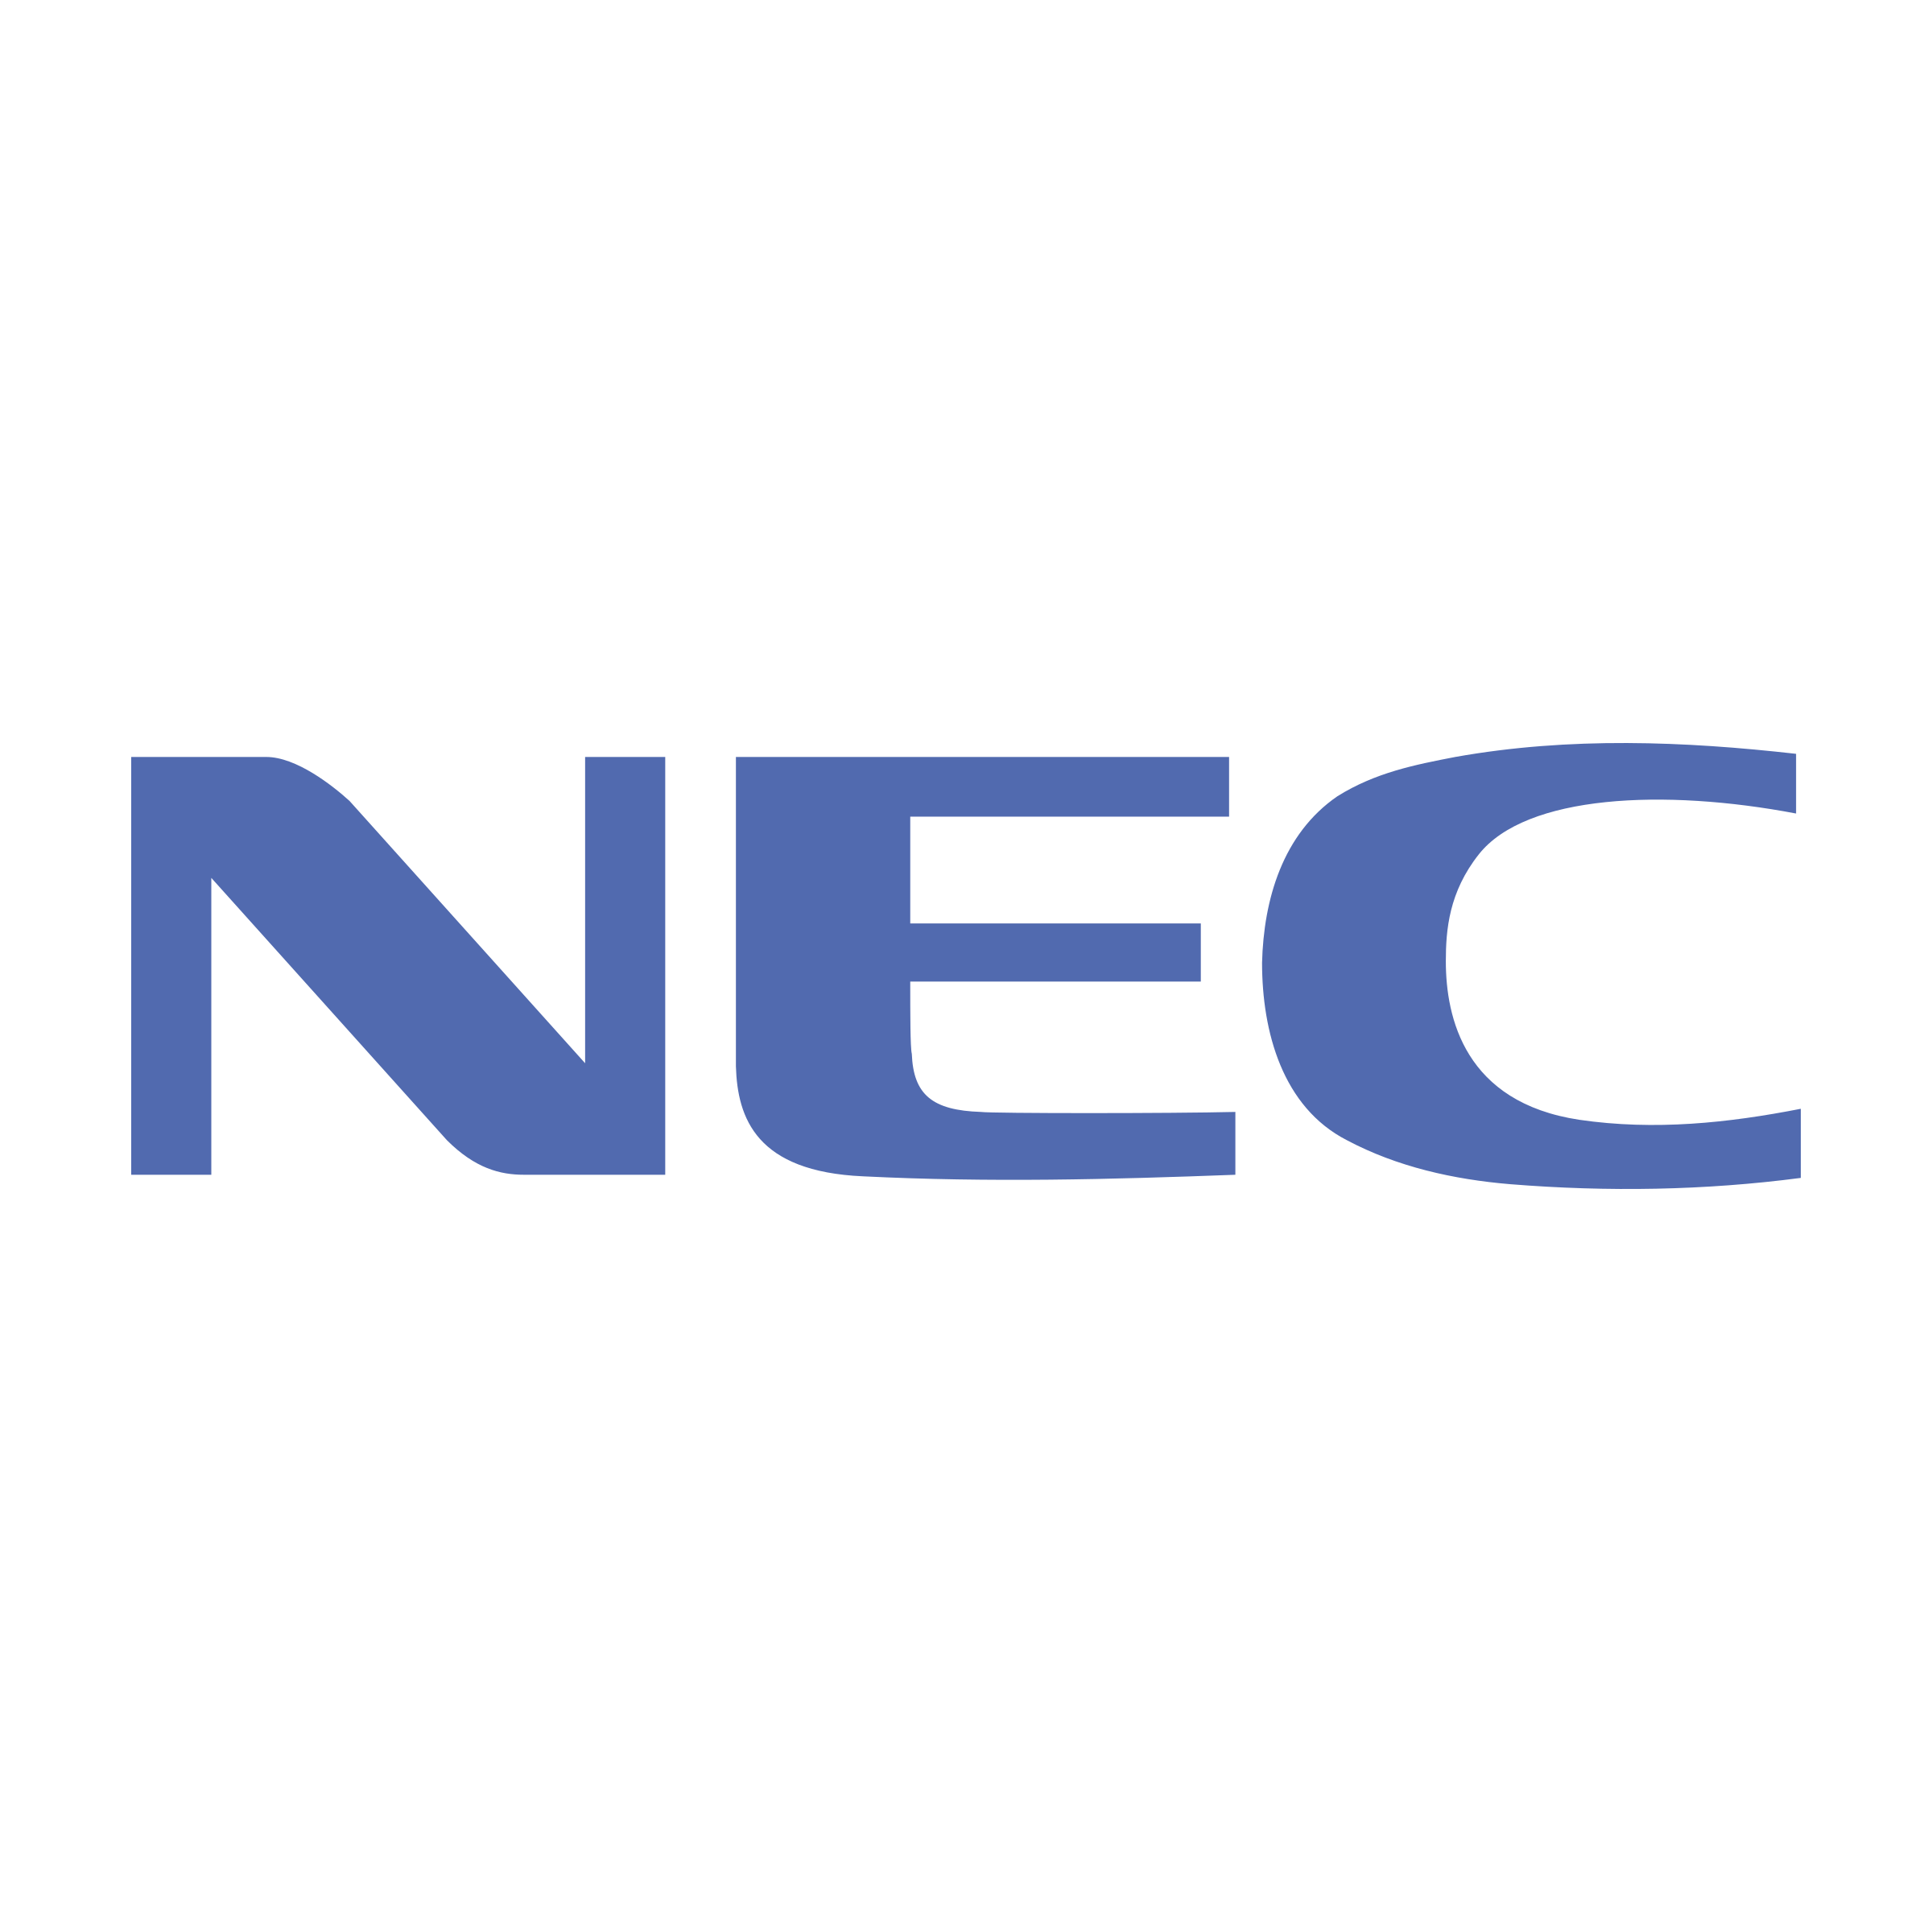 NEC Corp